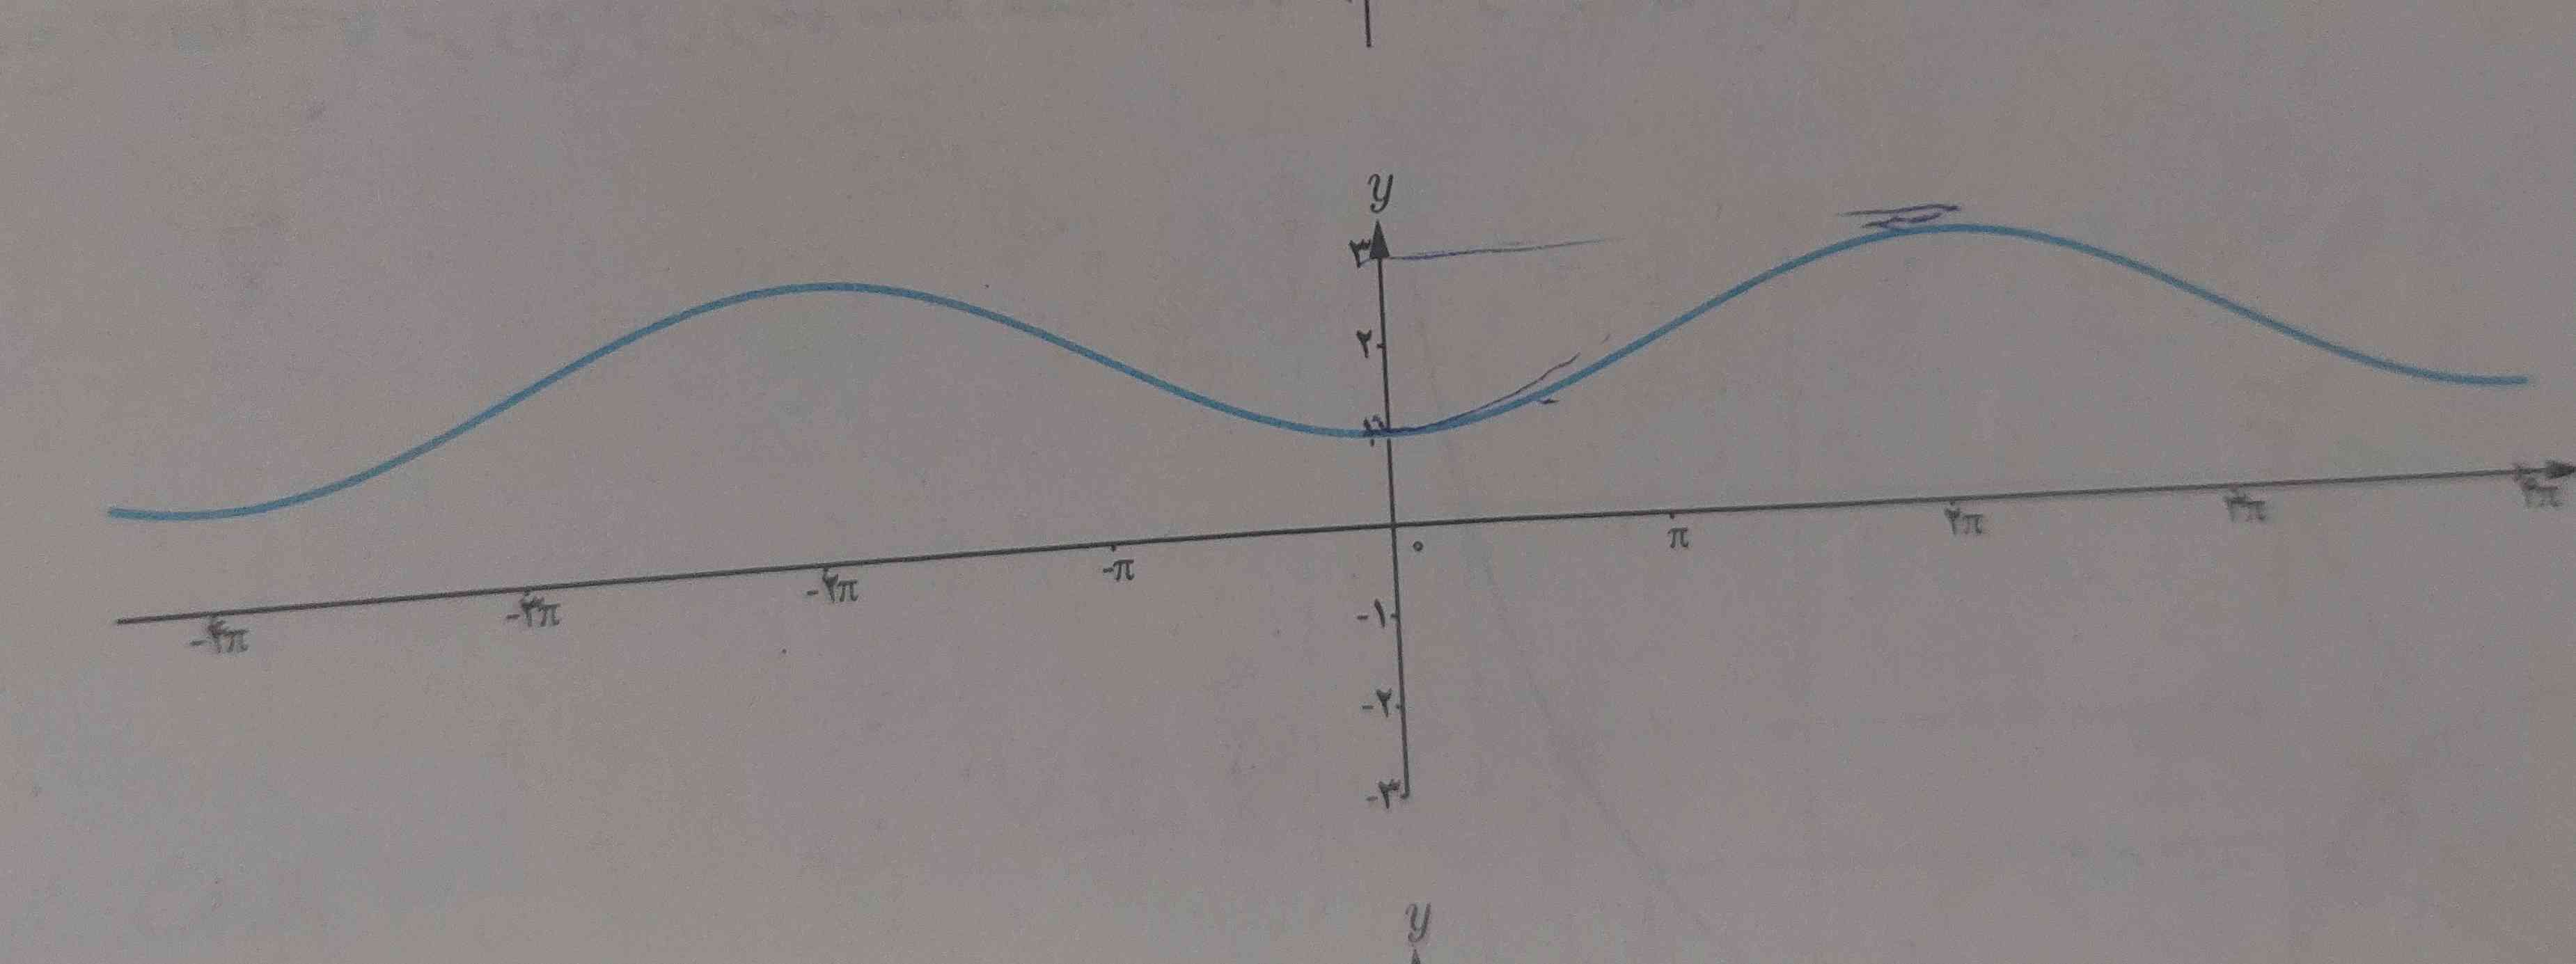 از کجا بفهمیم این نمودار cos هس